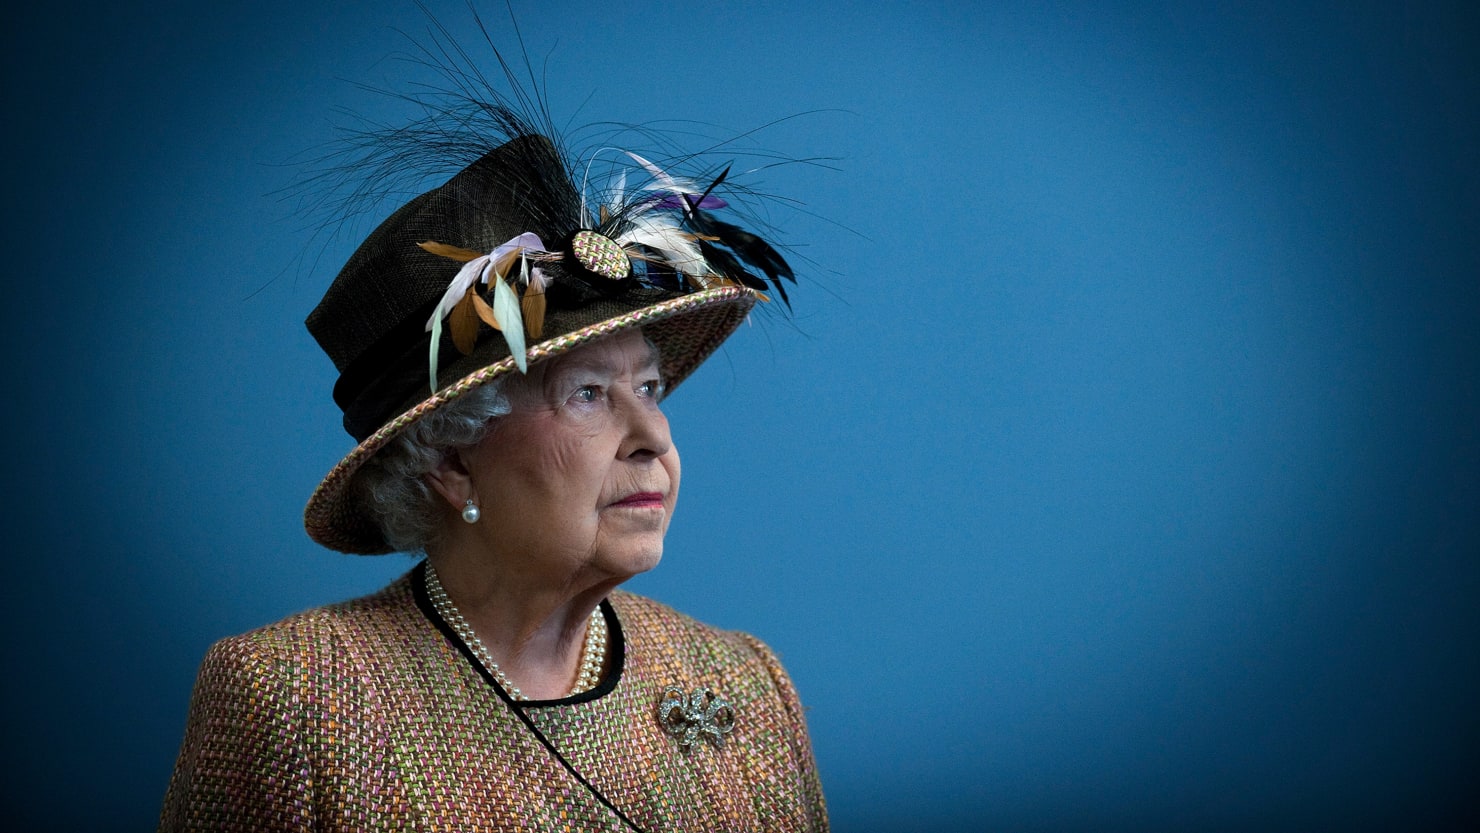 La reina Isabel II muere ‘pacíficamente’ a los 96 años. El rey Carlos III la sucede.